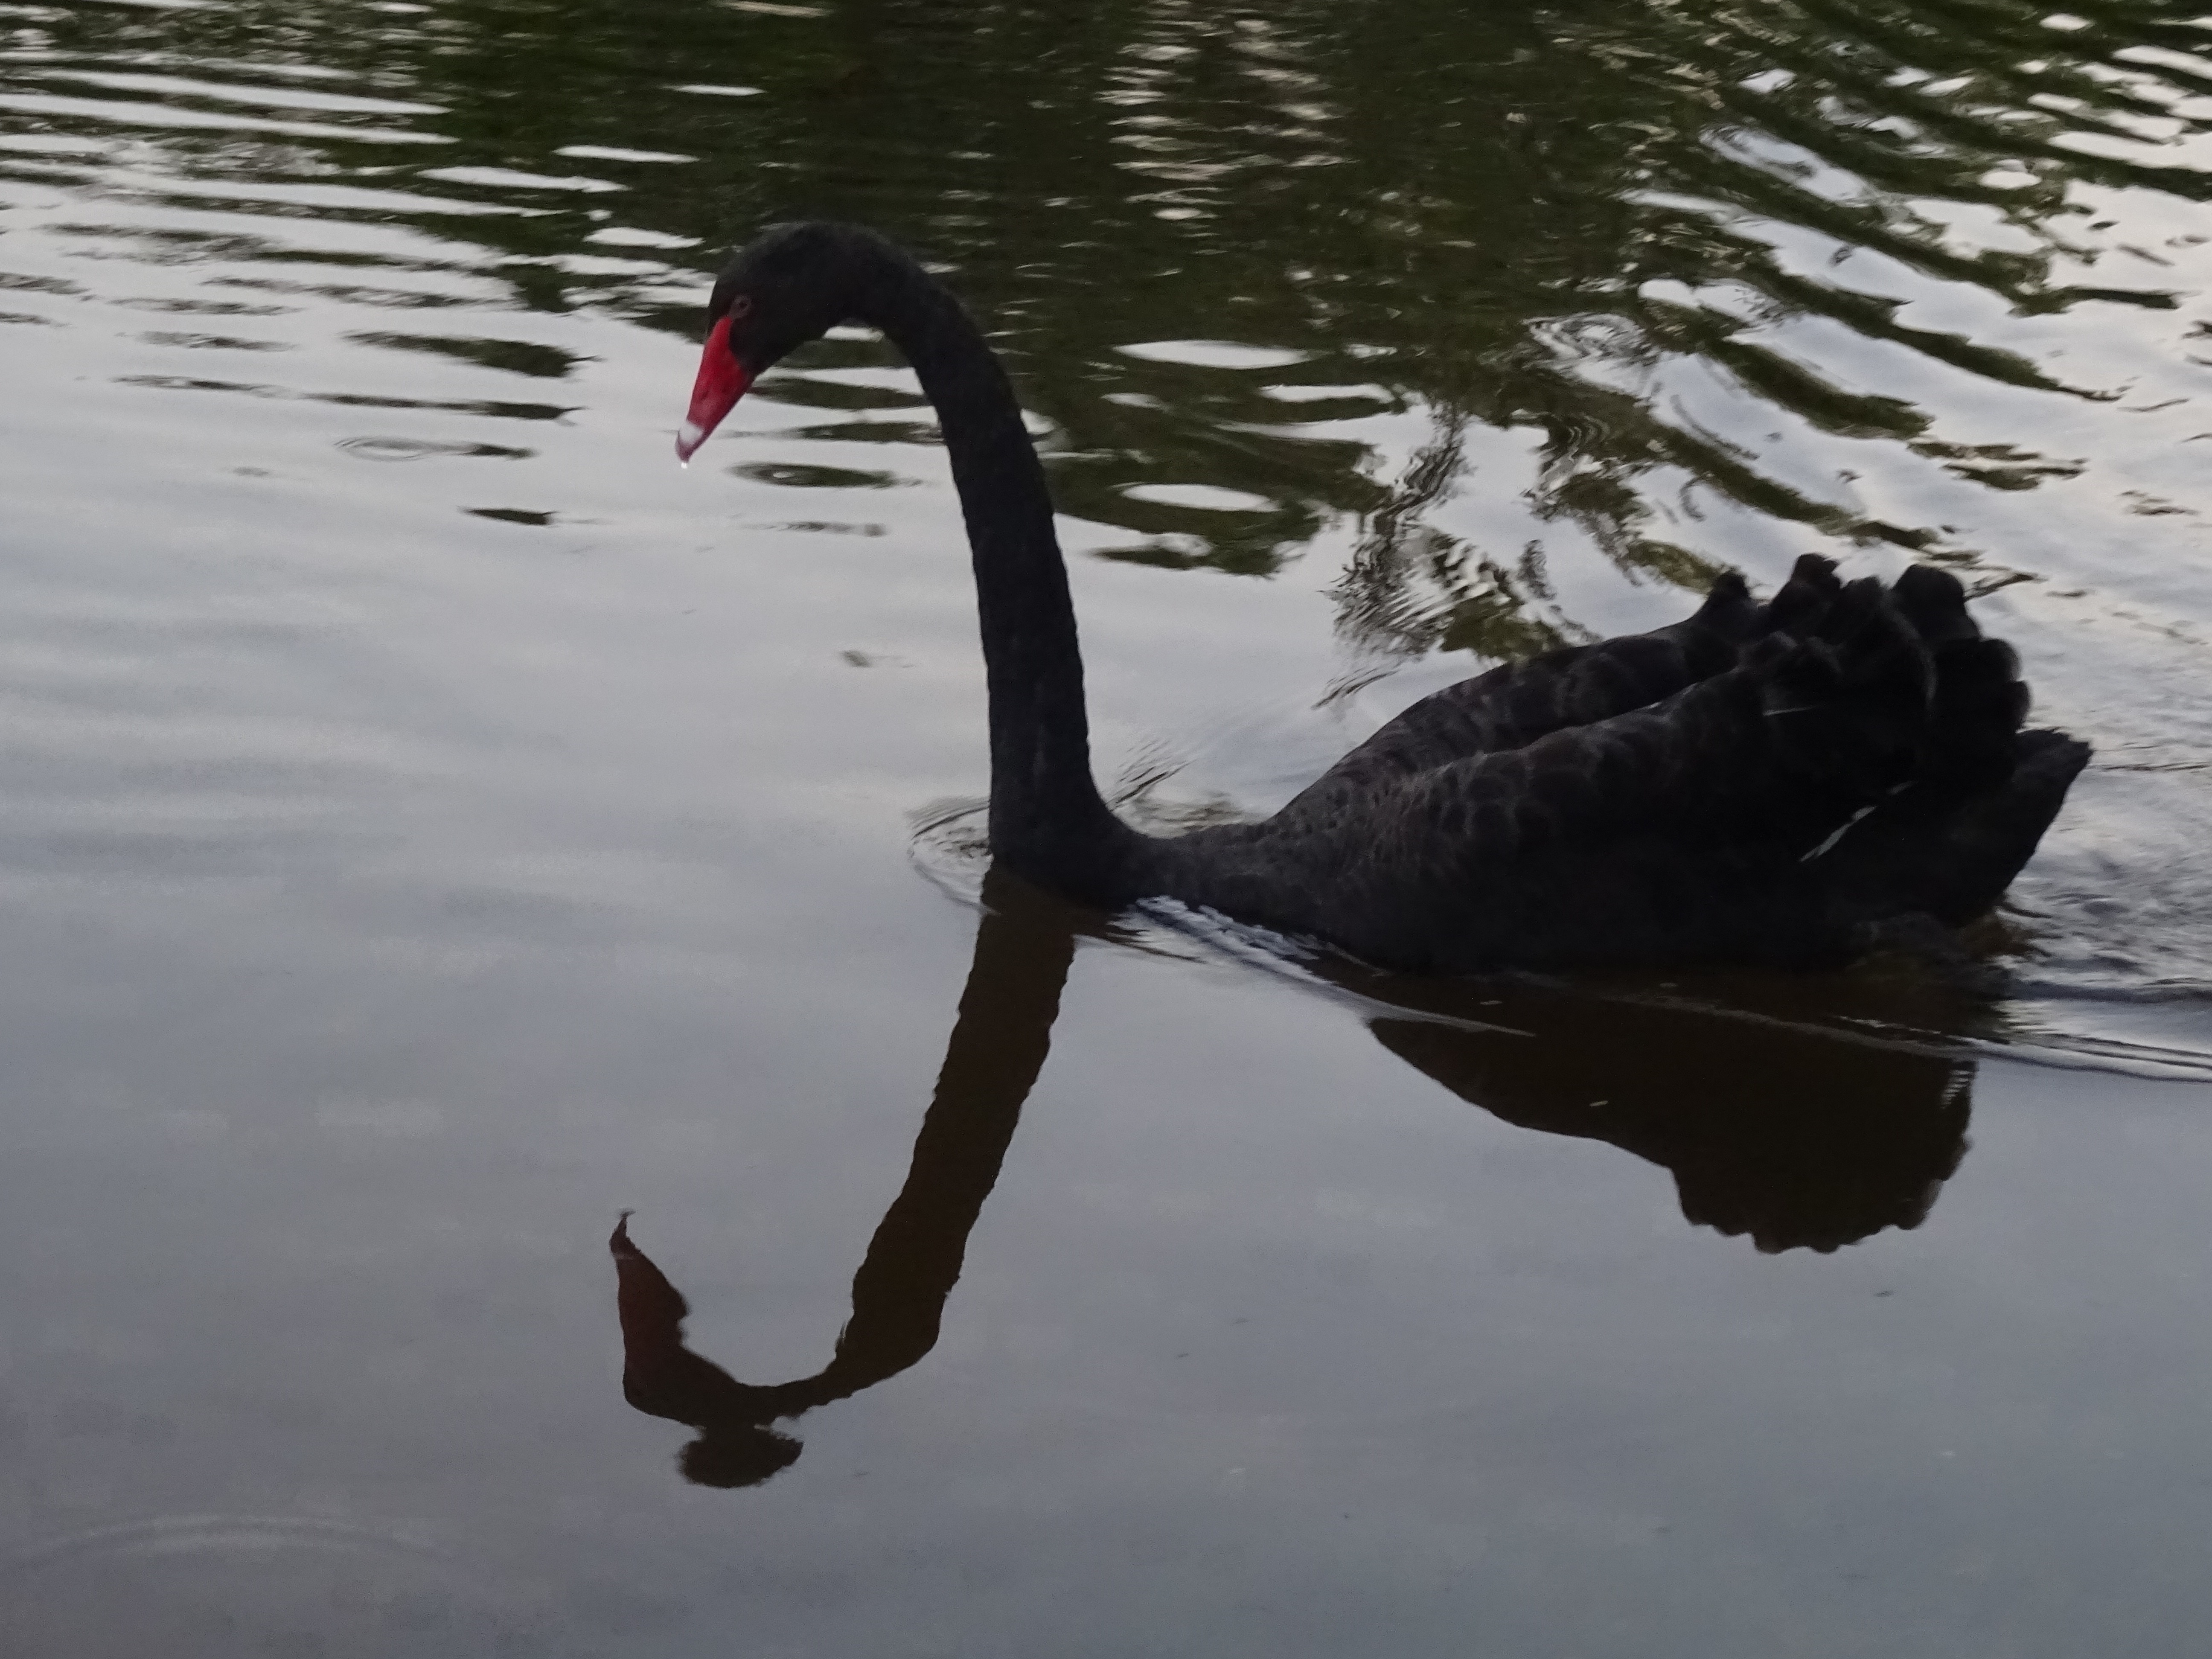 My first wild black swan!